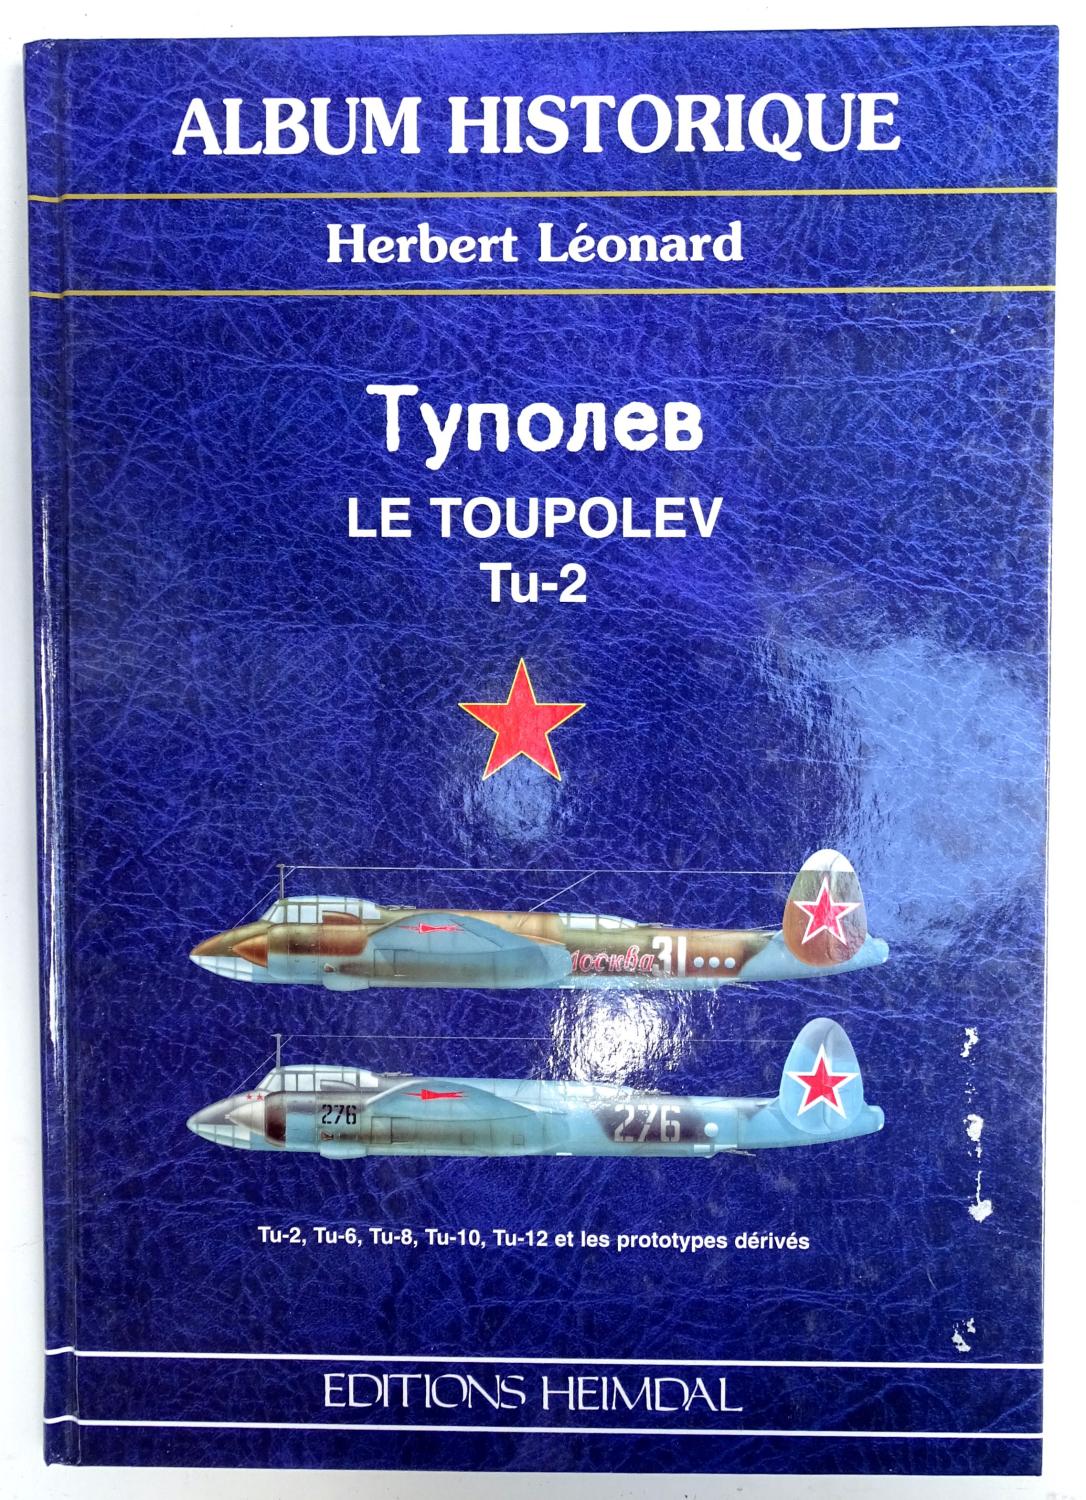 Le Toupolev Tu-2 Album historique  herbert L&eacute;onard Editions Heimdal